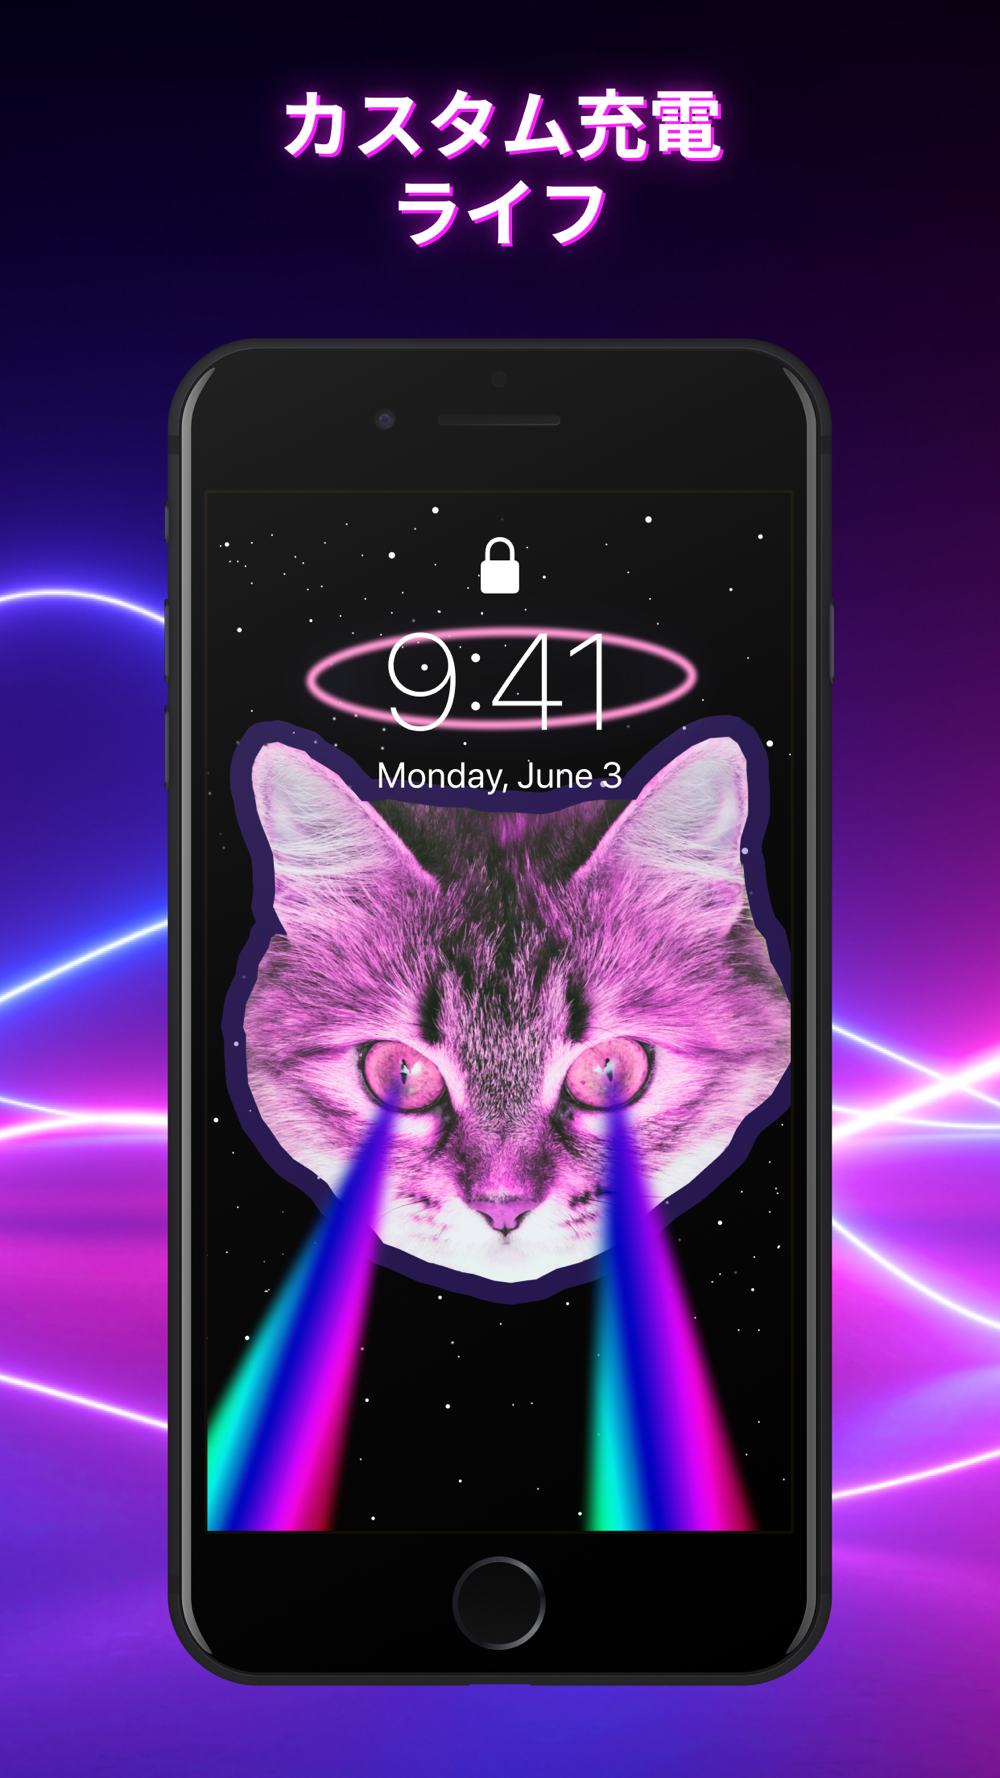 充電エンジン 充電ロック画面とクールな壁紙 Free Download App For Iphone Steprimo Com